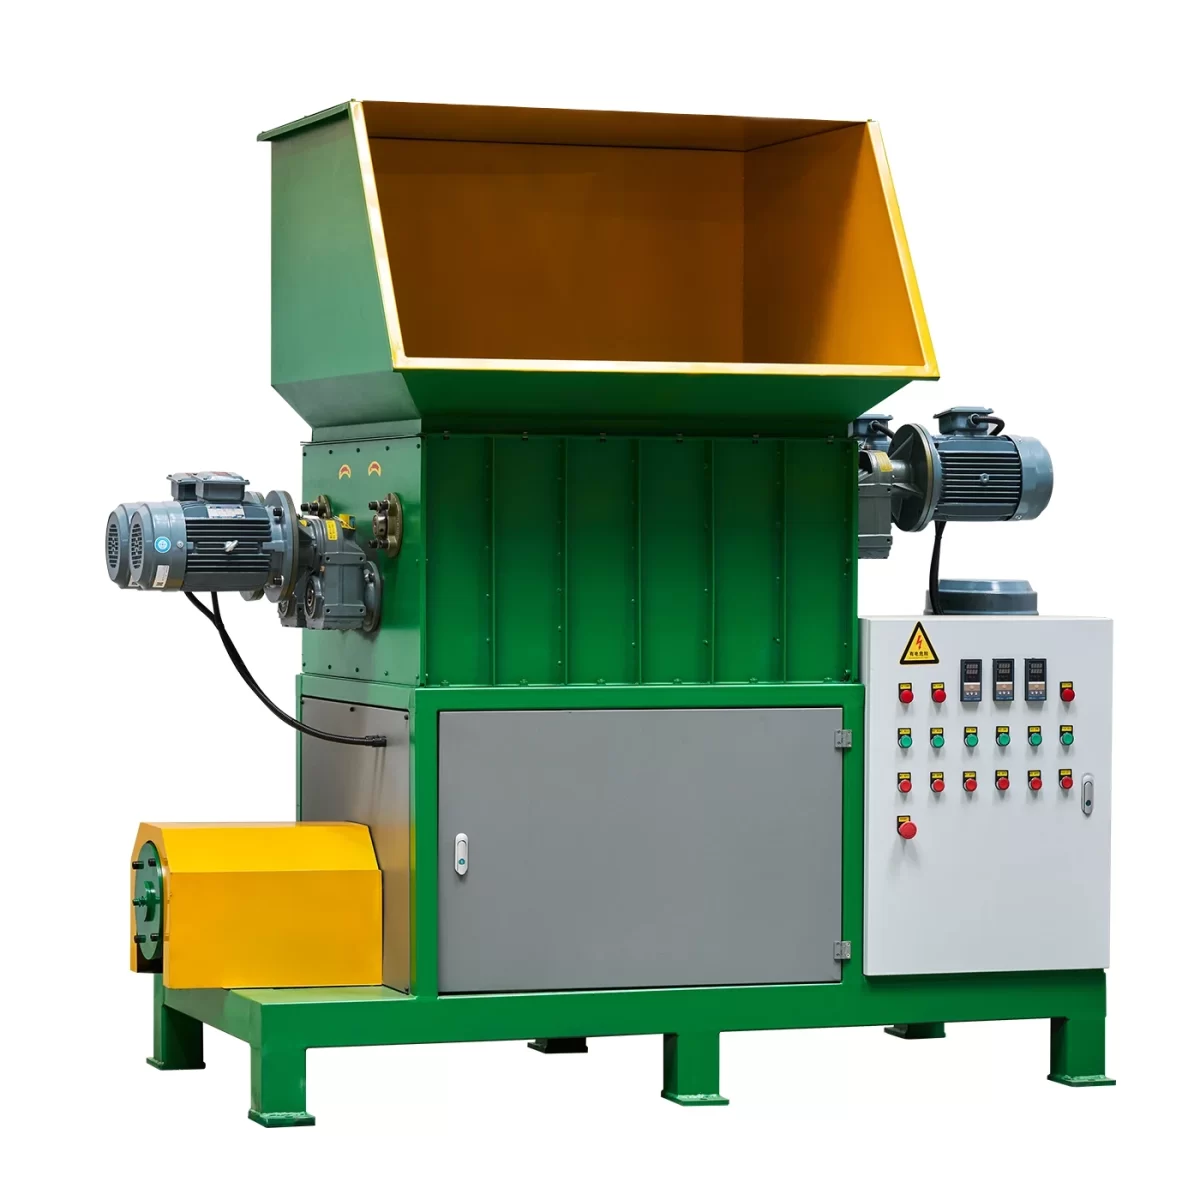 EPS melting machine with belt conveyer - eosmm 2 1 - Green Building EPS Machine